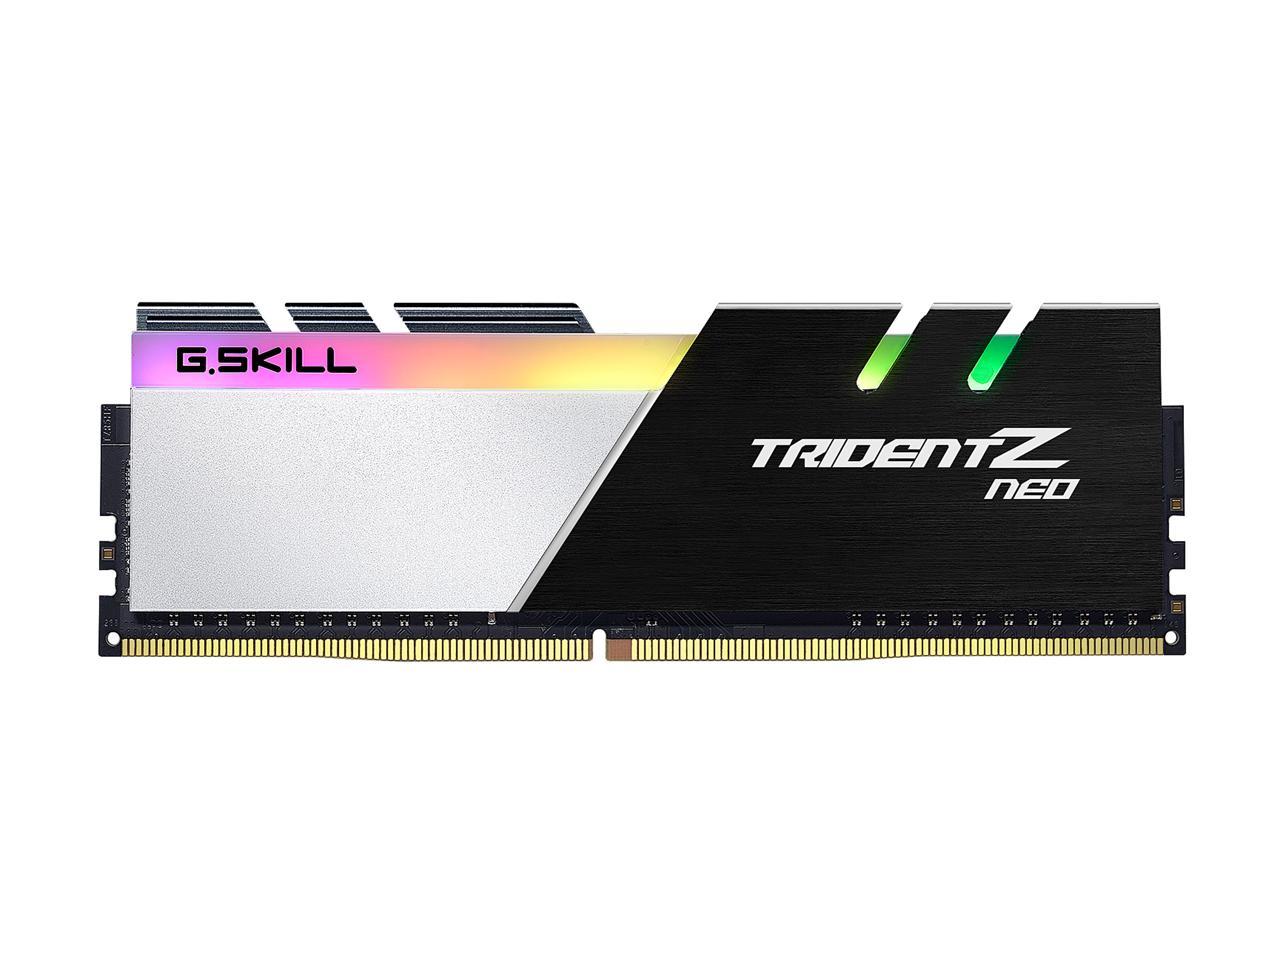 G.SKILL Trident Z Neo Series 64GB (4 x 16GB) 288-Pin DDR4 SDRAM DDR4 3600 (PC4 28800) Intel XMP 2.0 Desktop Memory Model F4-3600C14Q-64GTZN